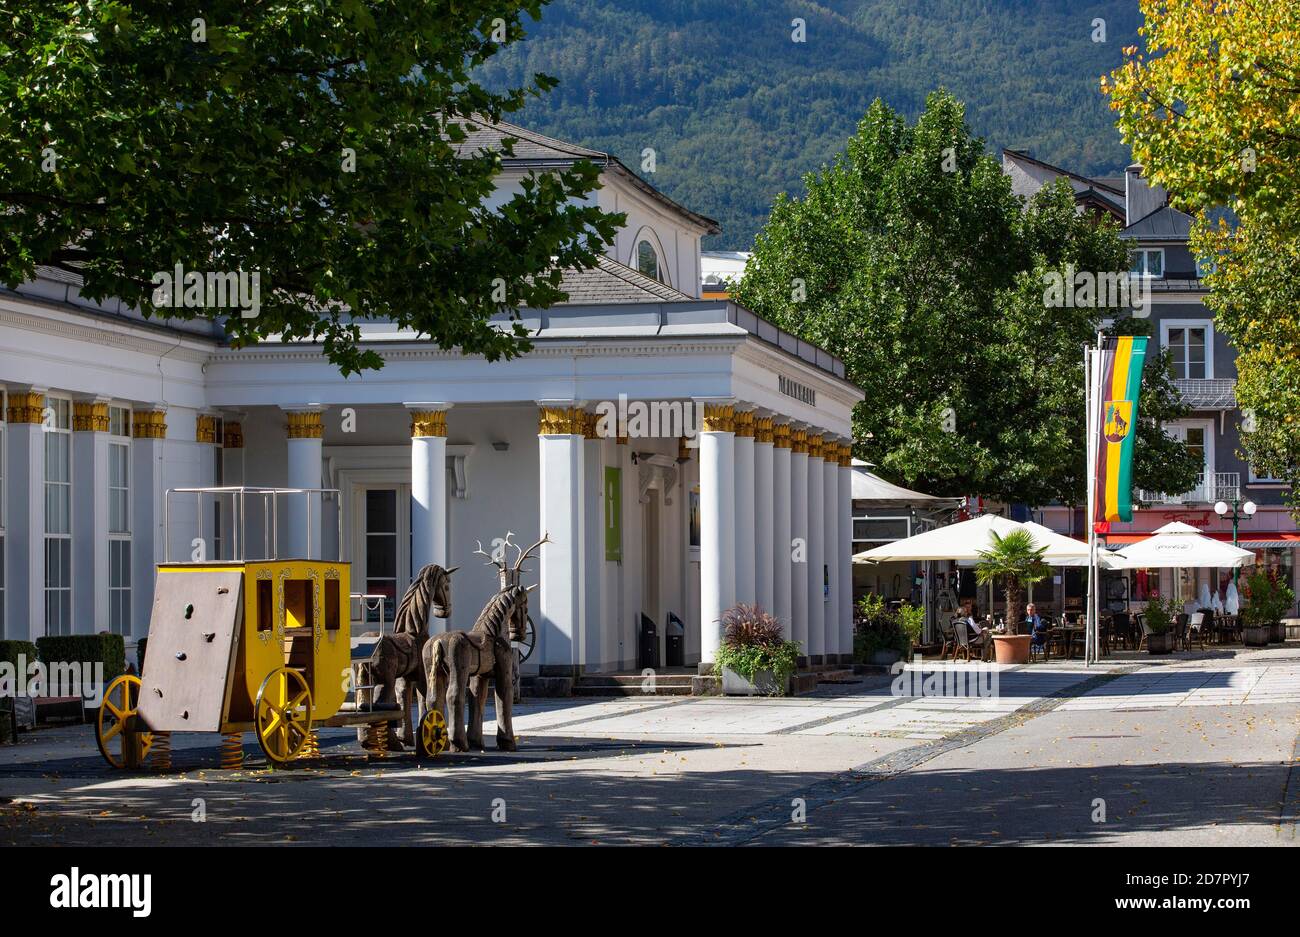 Drinking hall in the pedestrian zone, Bad Ischl, Salzkammergut, Upper Austria, Austria Stock Photo